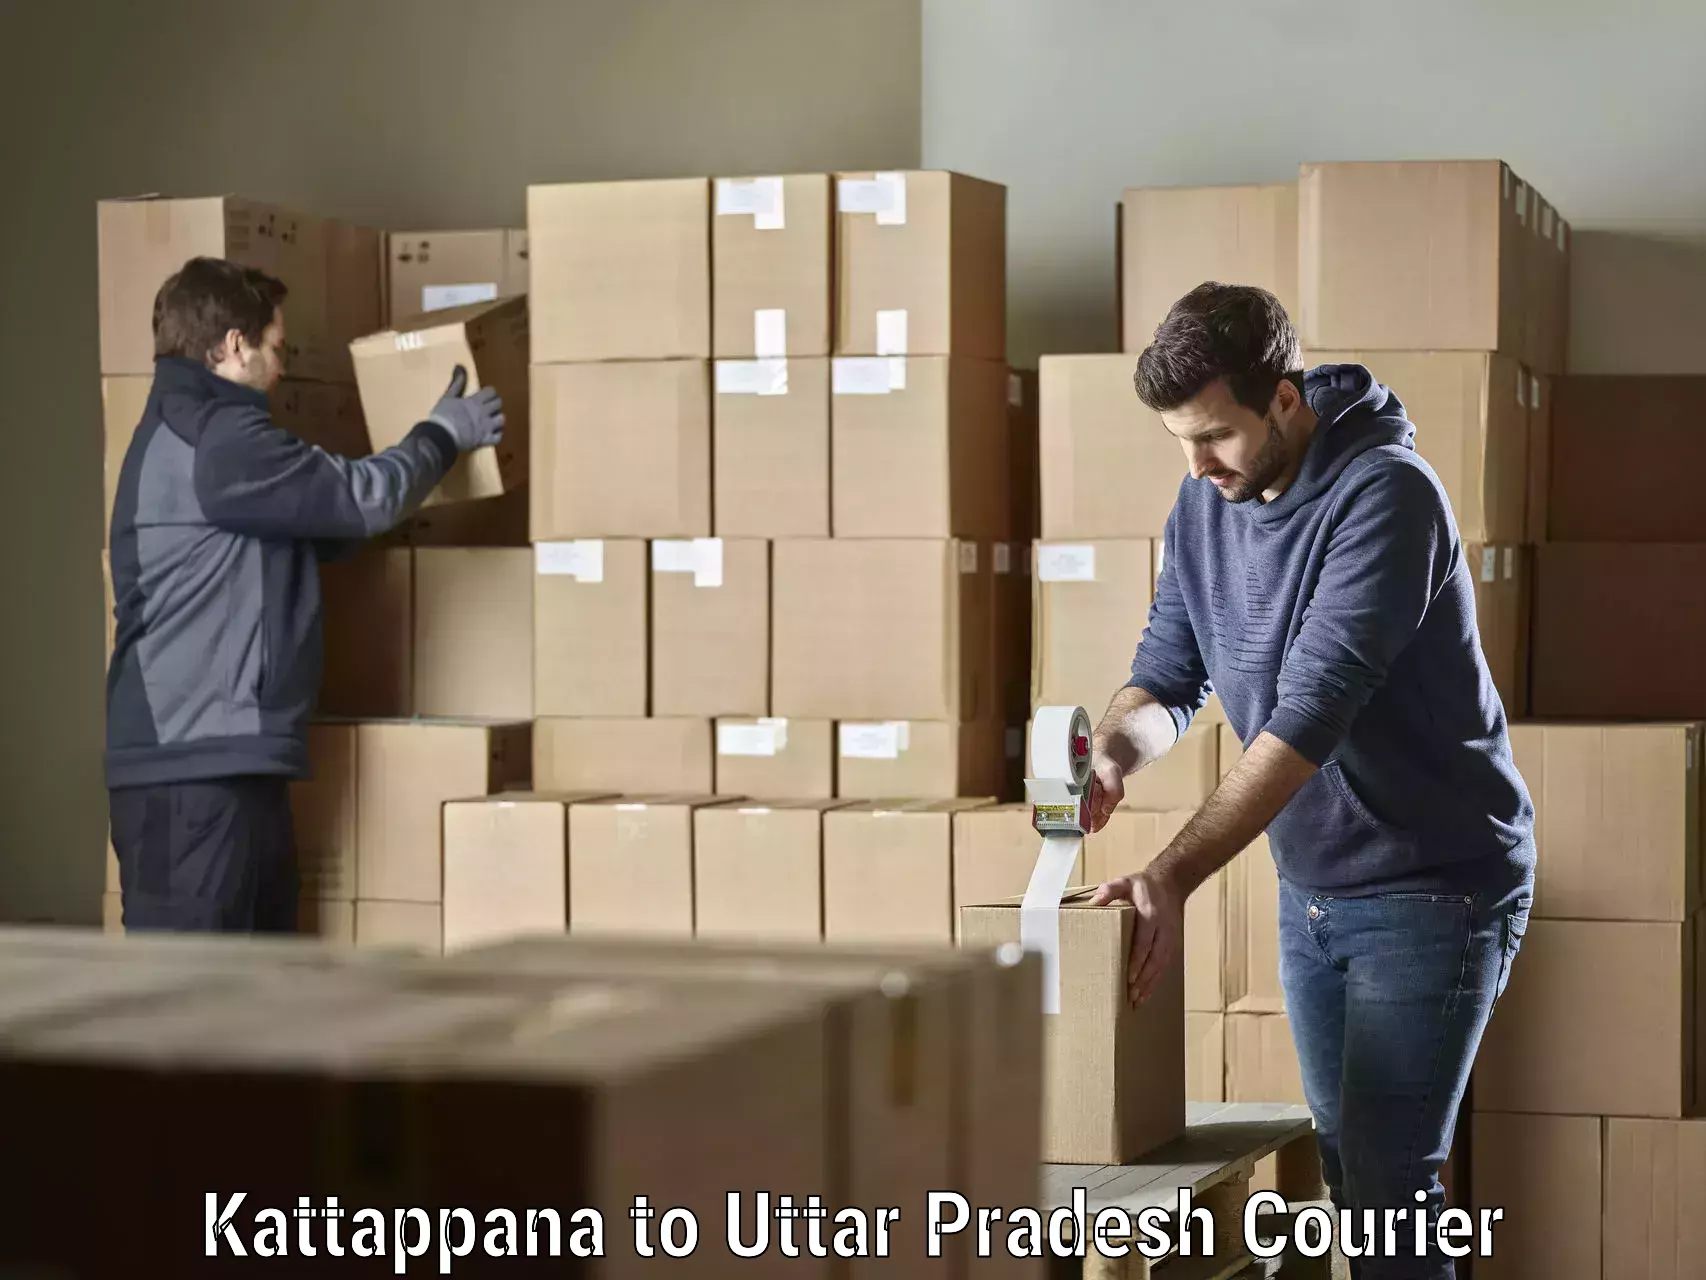 Courier insurance in Kattappana to Mahasi